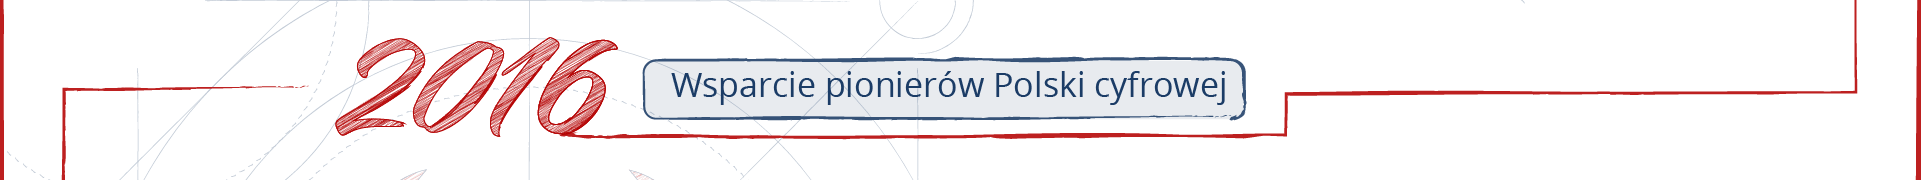 Fragment osi czasu. Ozdobny napis 2016, obok ramka z napisem „Wsparcie pionierów Polski cyfrowej”.